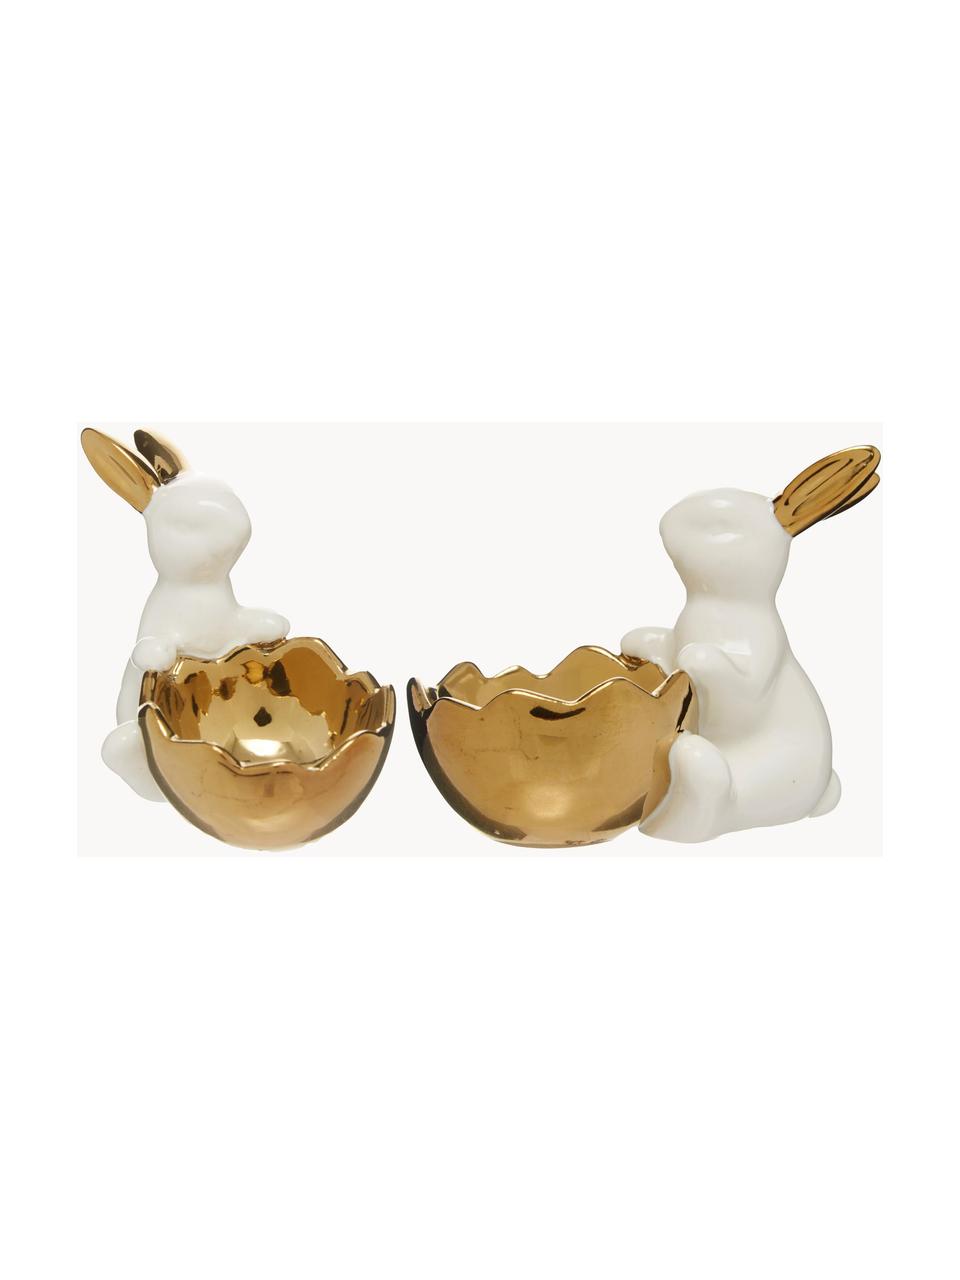 Soportes de huevo Bunny, 2 uds., Porcelana, Blanco, dorado, Set de diferentes tamaños